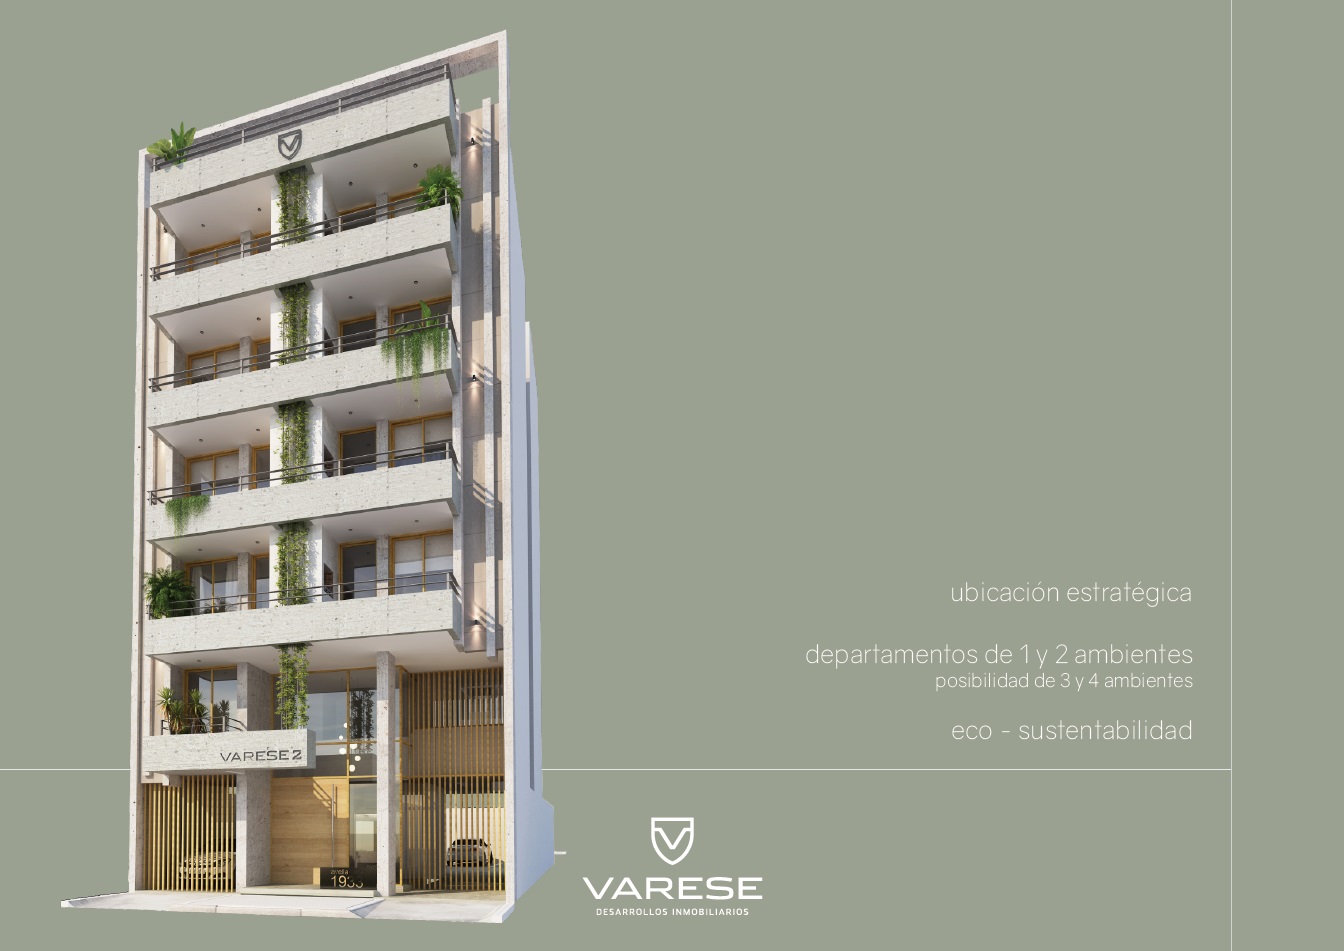 En venta. Edificio Varese II. Departamentos de 1,2,3 y 4 ambientes. Posibilidad de terrazas propias. Zona Chauvin 